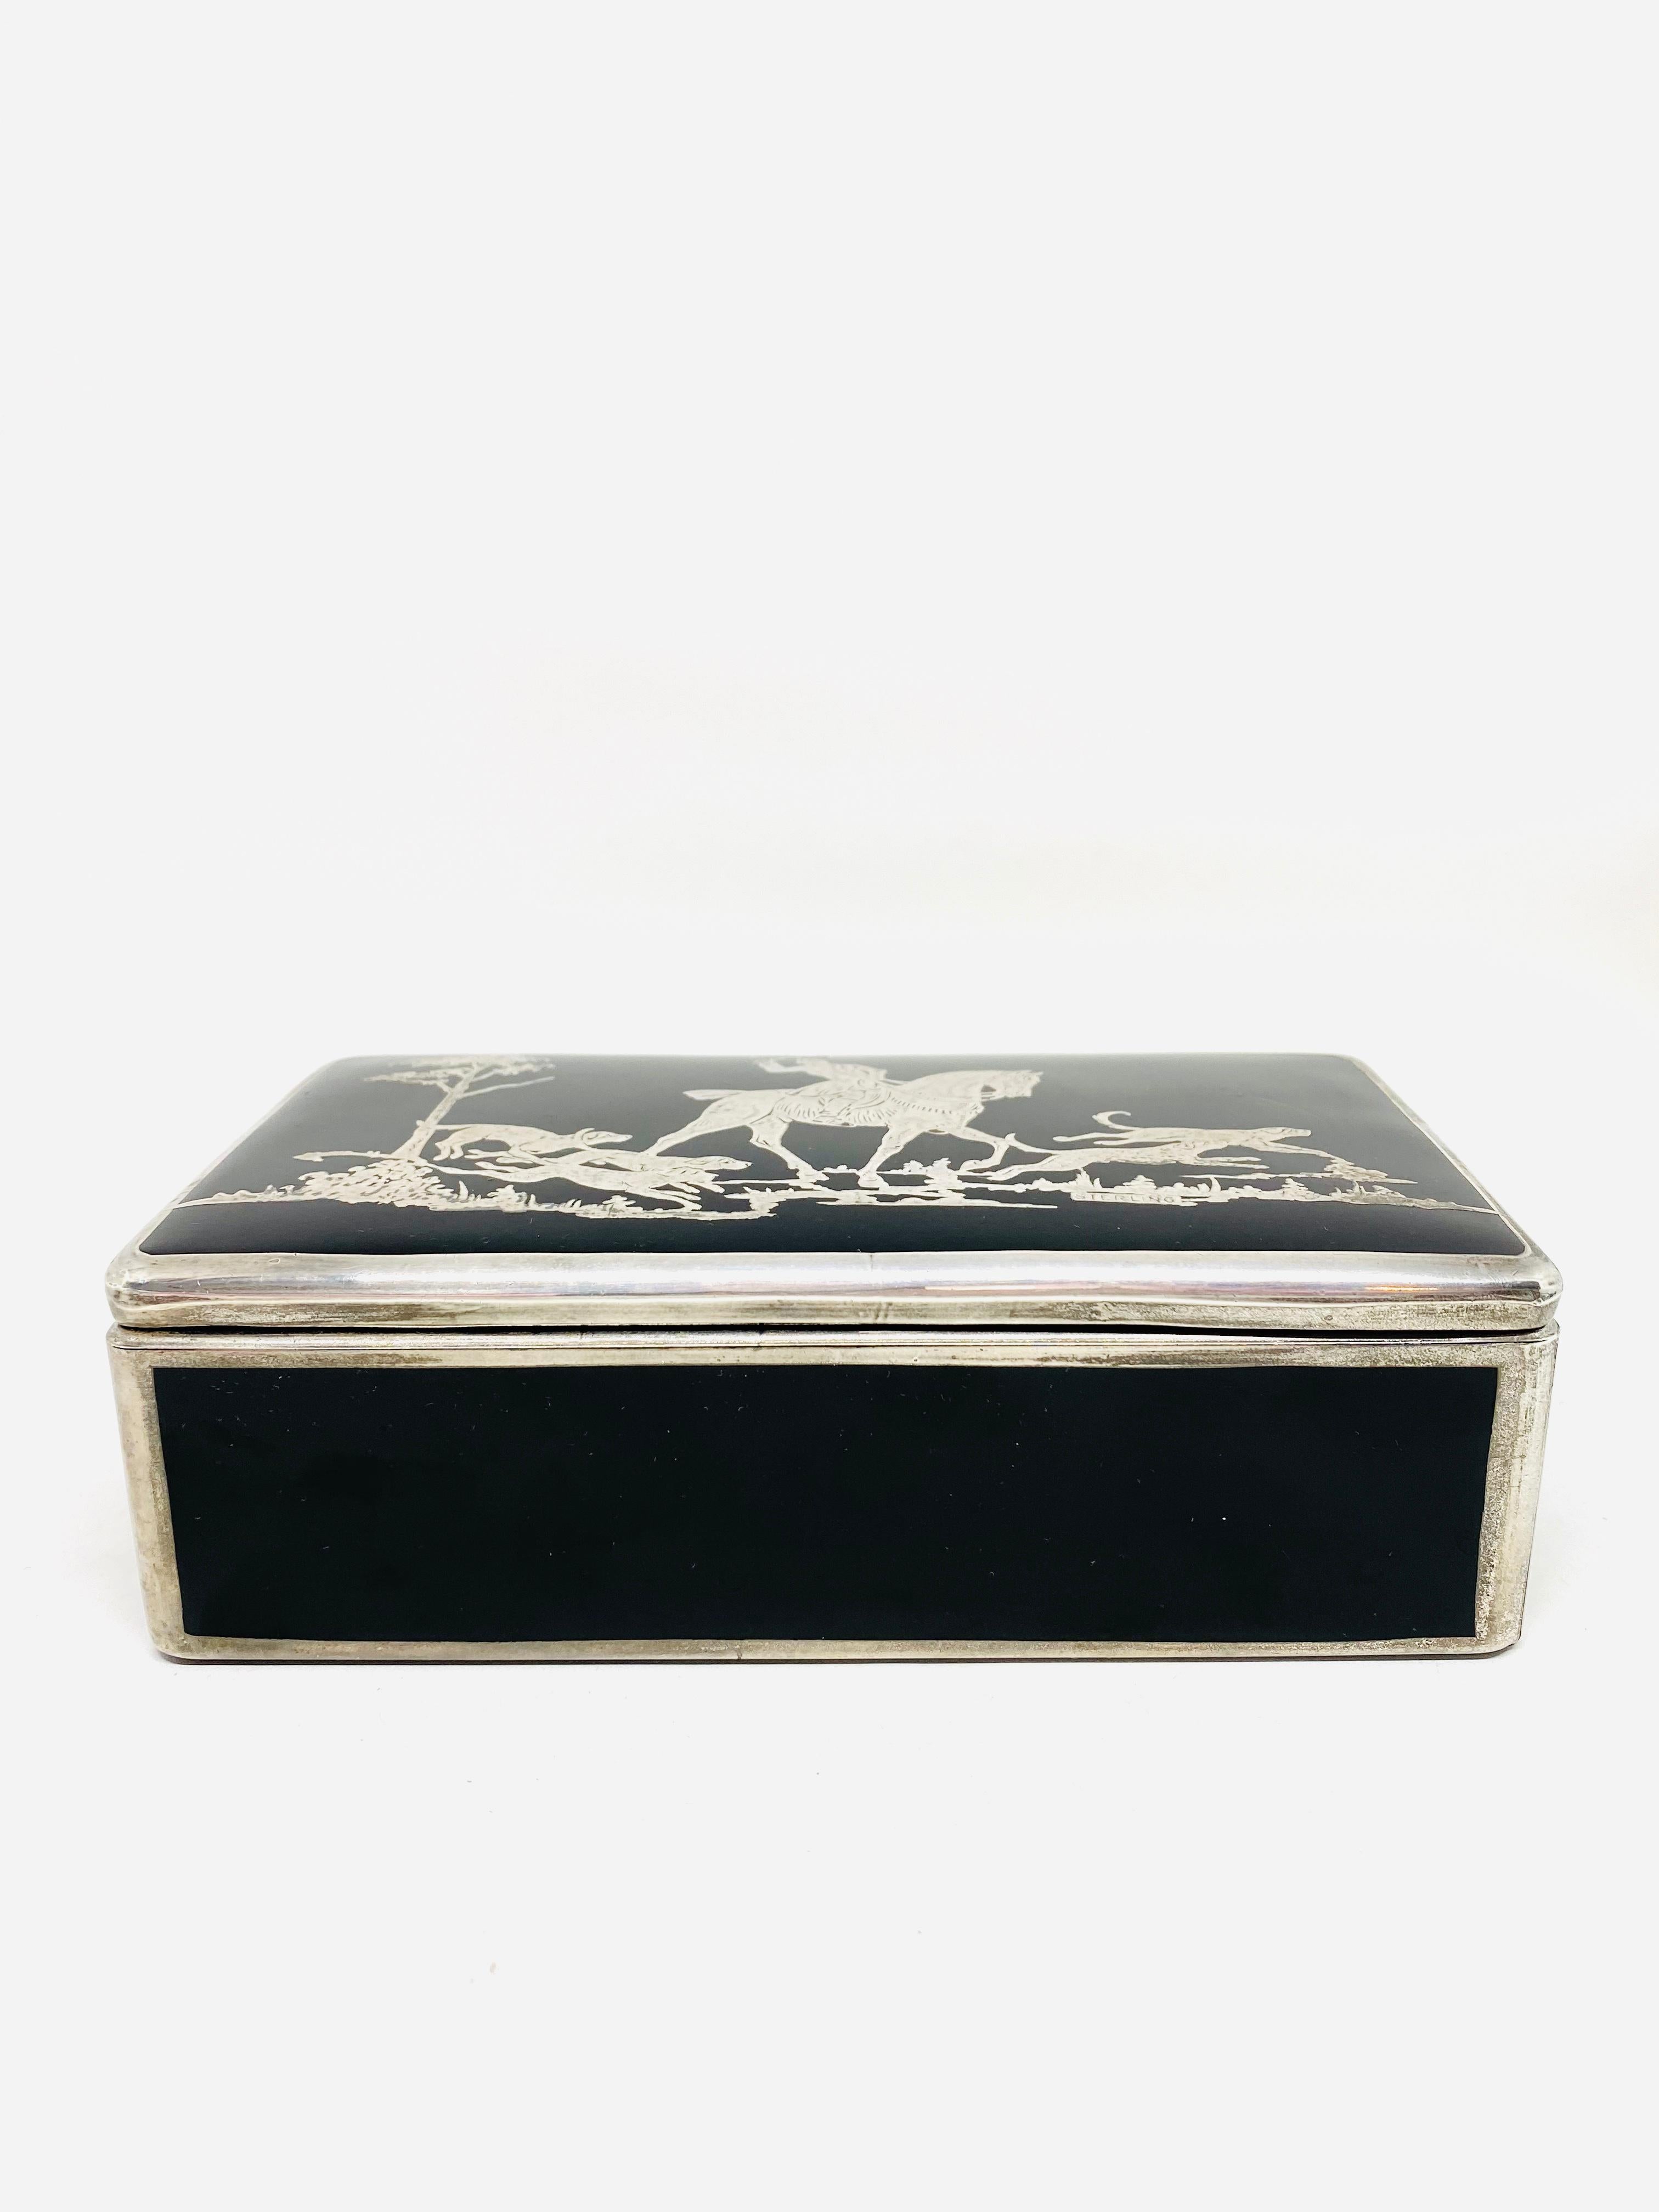 boîte à bijoux bohème des années 1920 en argent sterling et verre

Détails du produit :
Boîte en verre noir avec détails en argent sterling
Scène de chasse faite à la main
